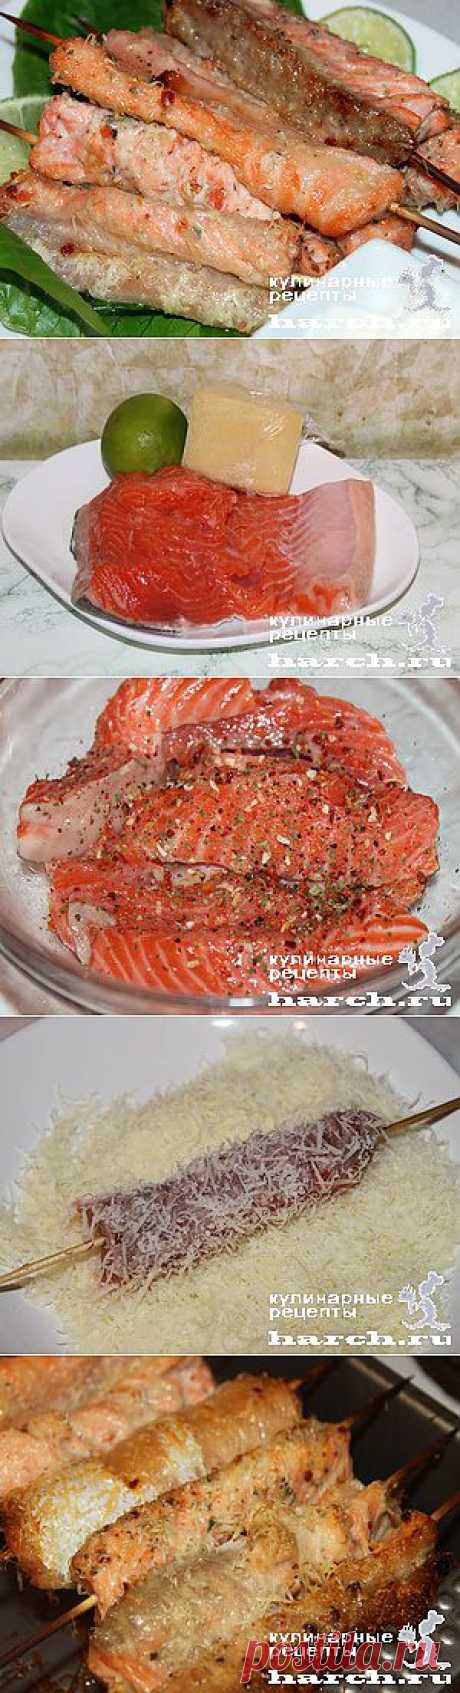 Рыбные шашлычки с пармезаном  |  Харч.ру  - рецепты для любителей вкусно поесть